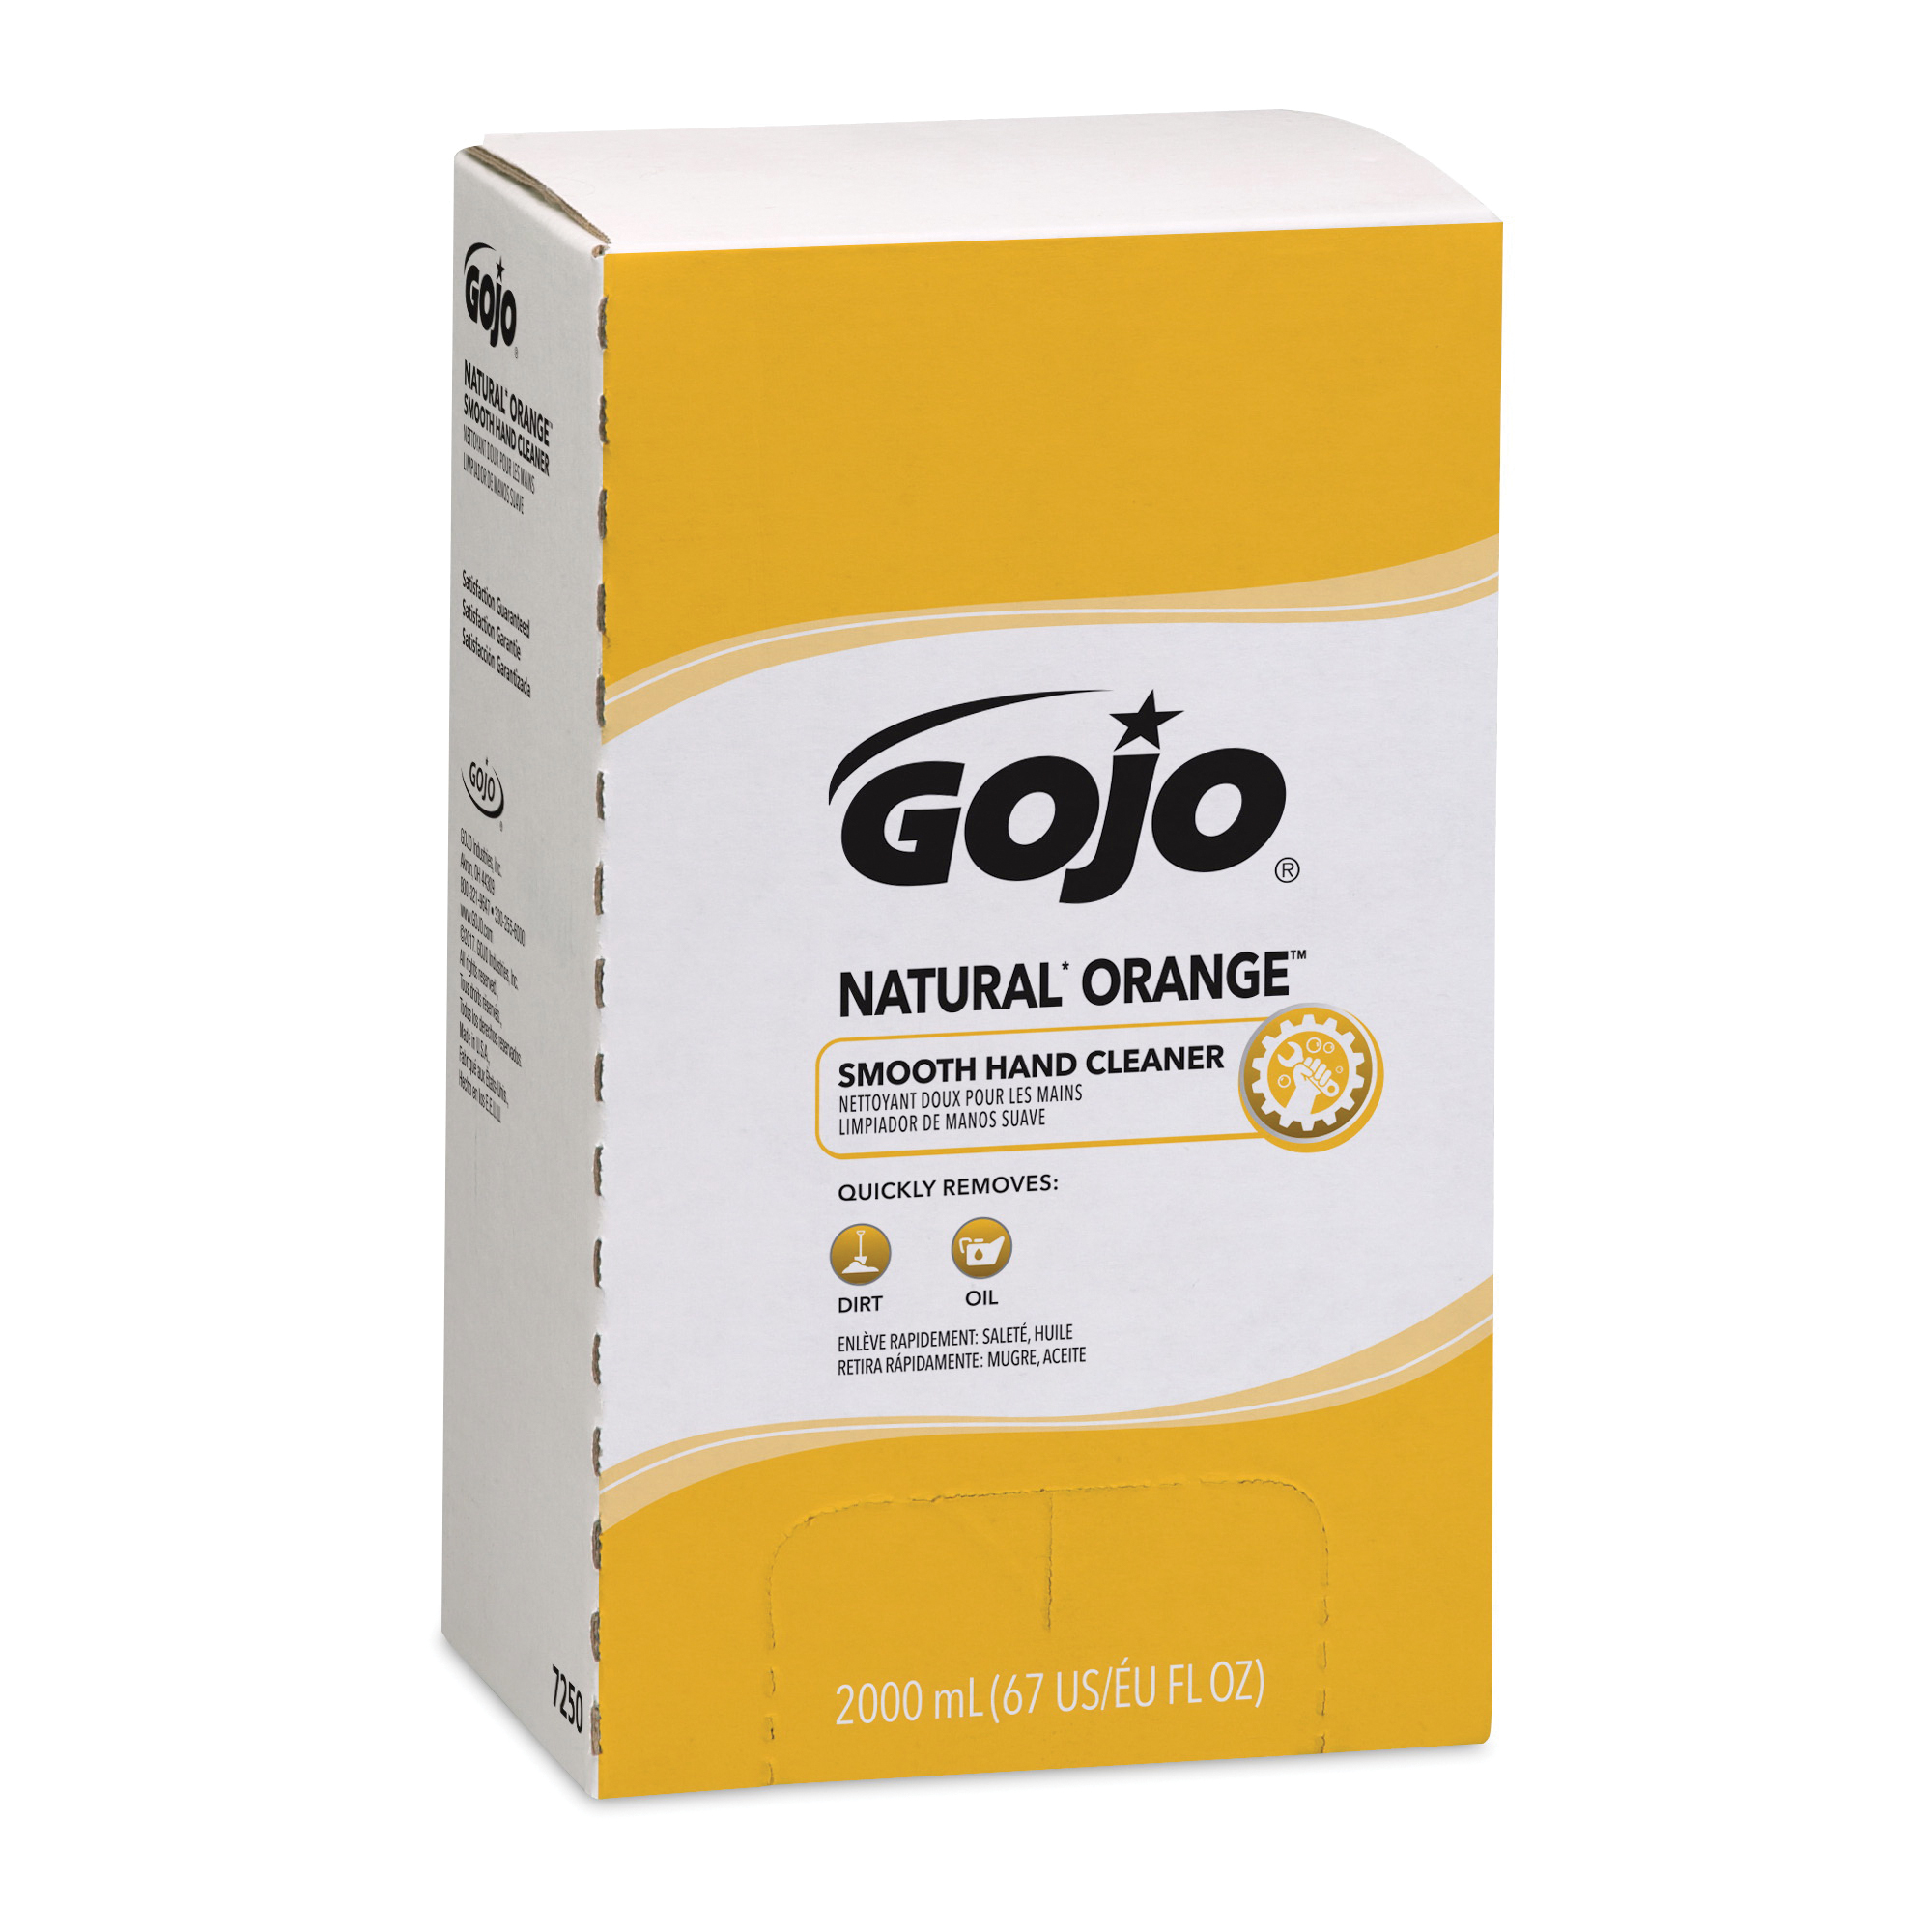 GOJO® 7250-04 NATURAL ORANGE™ PRO™ TDX™ Smooth Hand Cleaner, 2000 mL Nominal, Dispenser Refill Package, Lotion Form, Citrus Odor/Scent, Orange